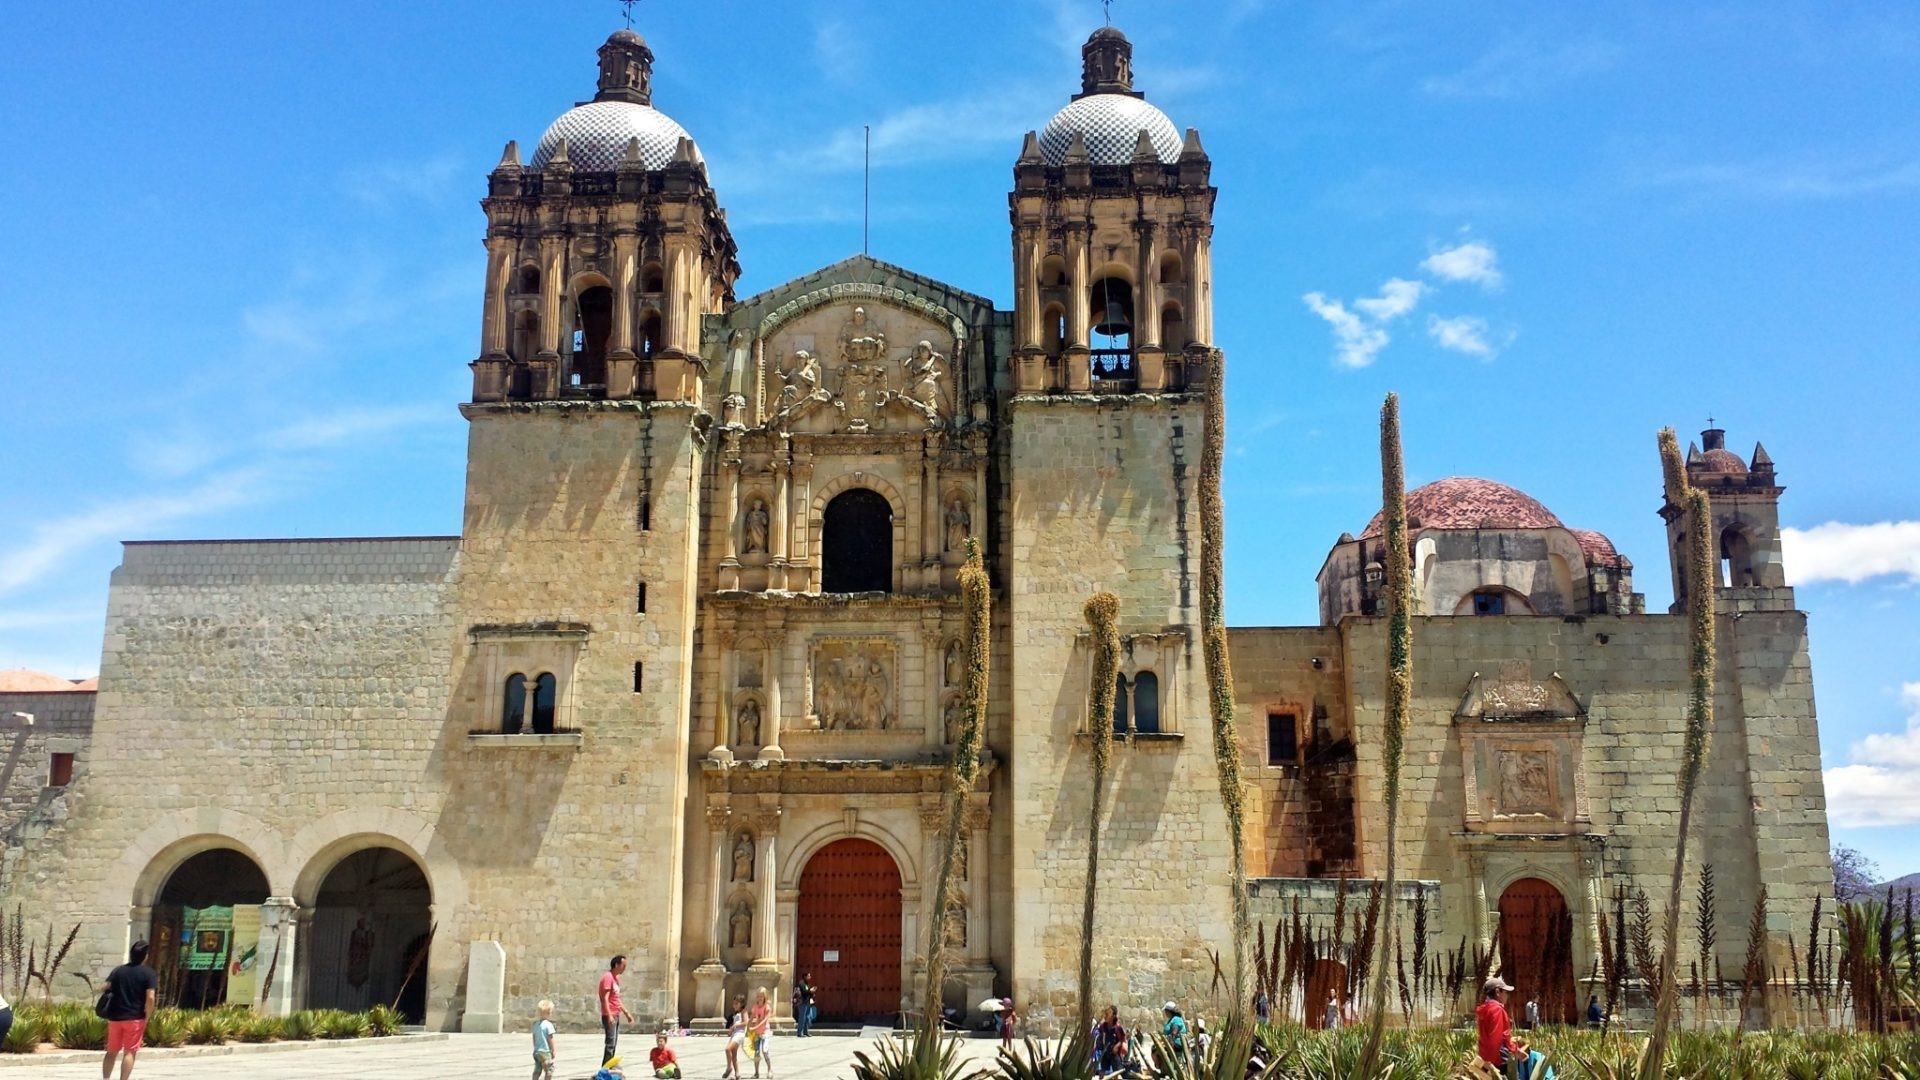 El Equipo Fotográfico Ideal para Capturar Oaxaca